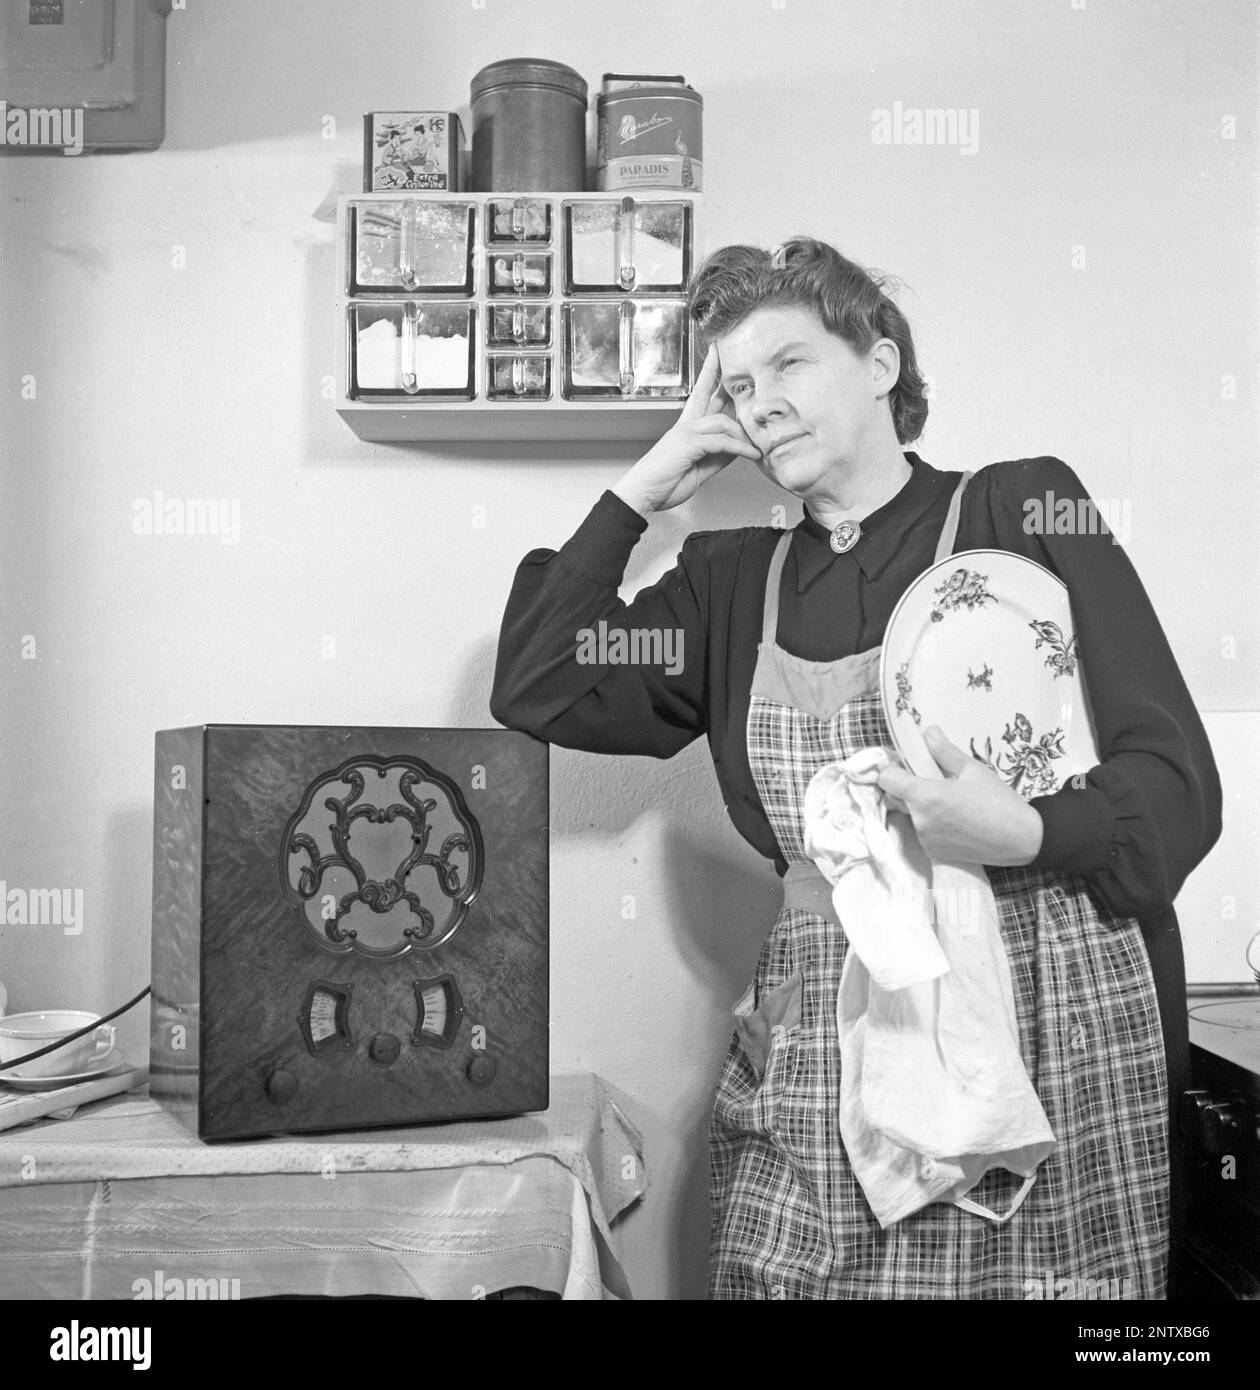 Radio-Hörer in der Vergangenheit. Eine Frau in der Küche hat angehalten, was sie dort tut, und man sieht, wie sie steht und etwas wichtiges oder eine schöne Melodie aus dem Radio hört. Auf der Vorderseite des Radios befindet sich eine Waage, und als Sie das Wahlrad daneben gedreht haben, sodass sich der Zeiger in der Mitte eines Sendernamens befand, war dieser Sender dort. Neben UKW-Übertragungen hörten sie auch ausländisches Radio auf Langwellen. Schweden 1945 Kristofferson Ref. M4-3 Stockfoto